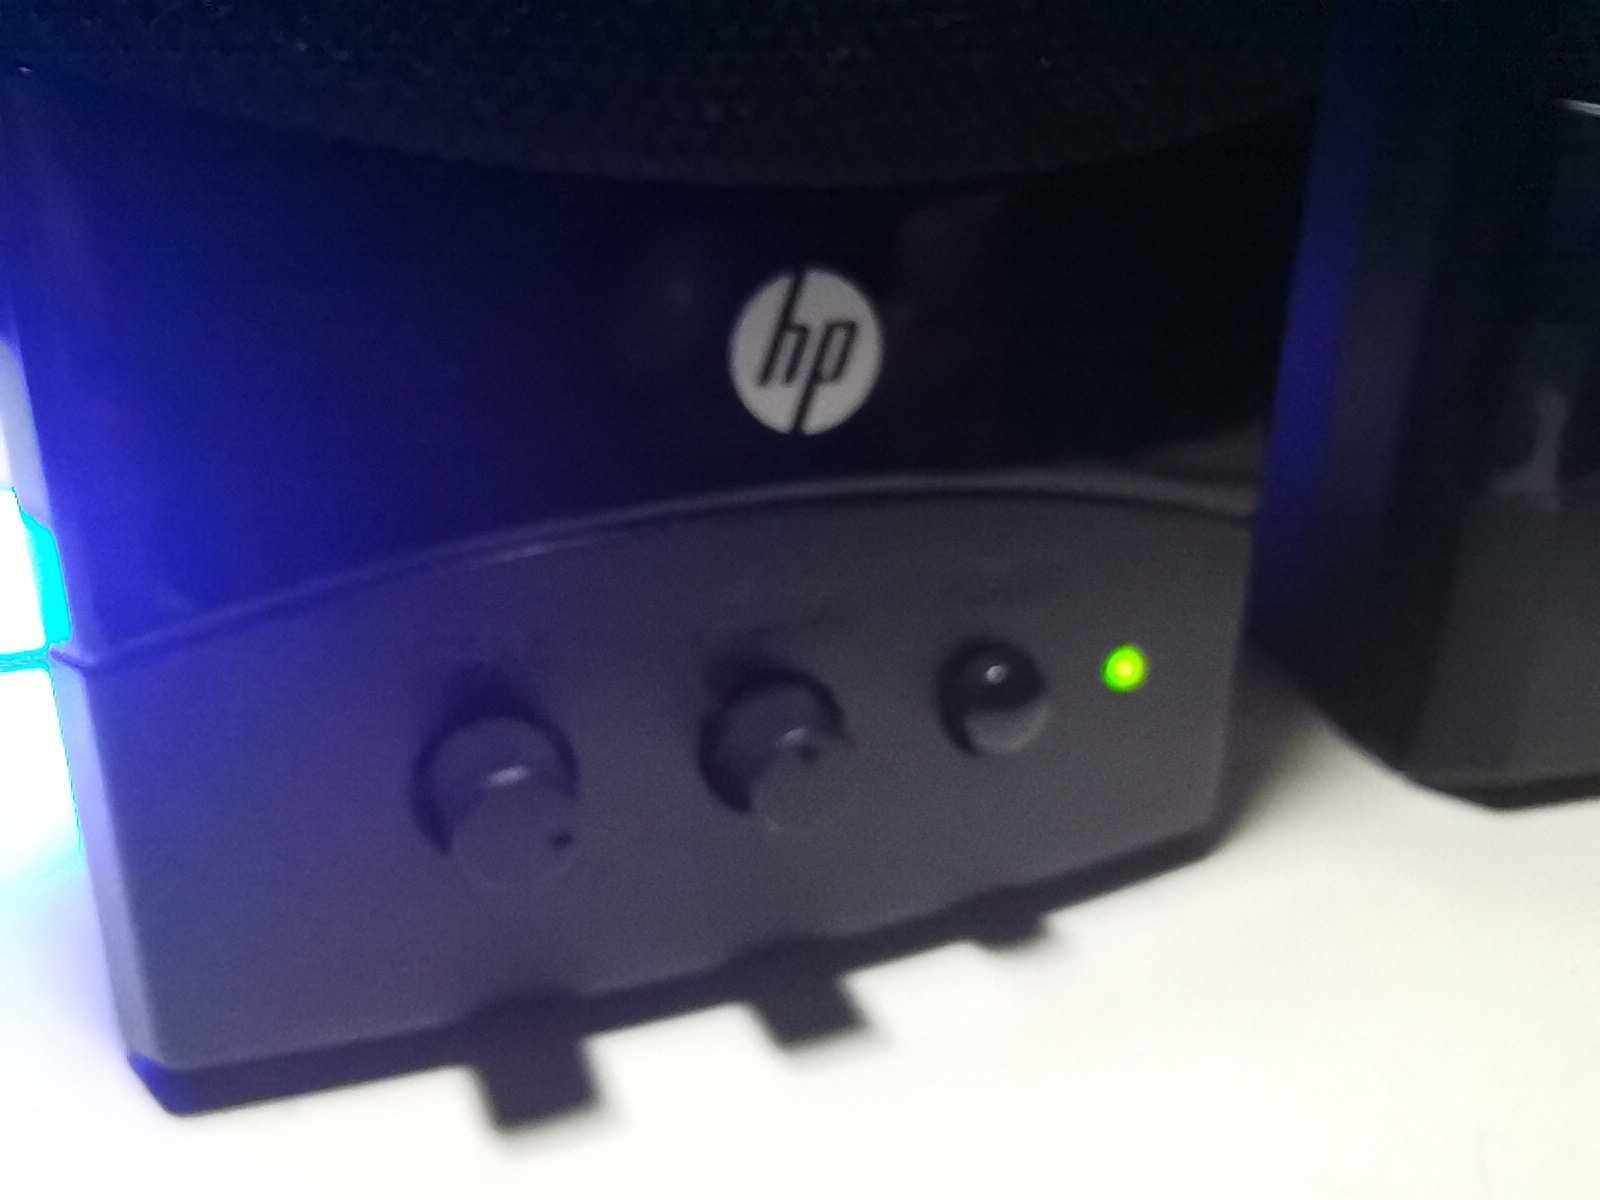 Colunas HP para PC usb